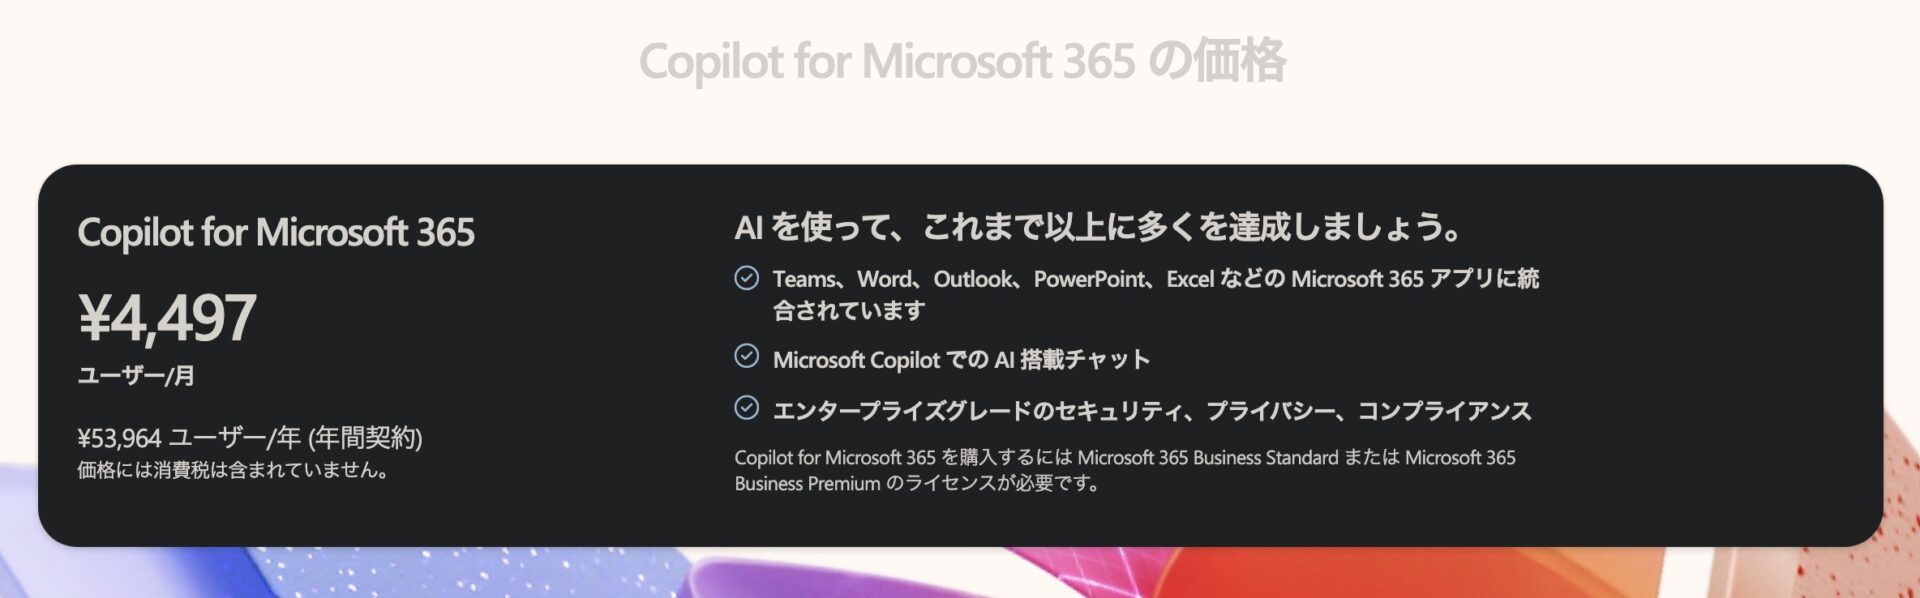 Copilot for Microsoft 365 の価格のスクショ。